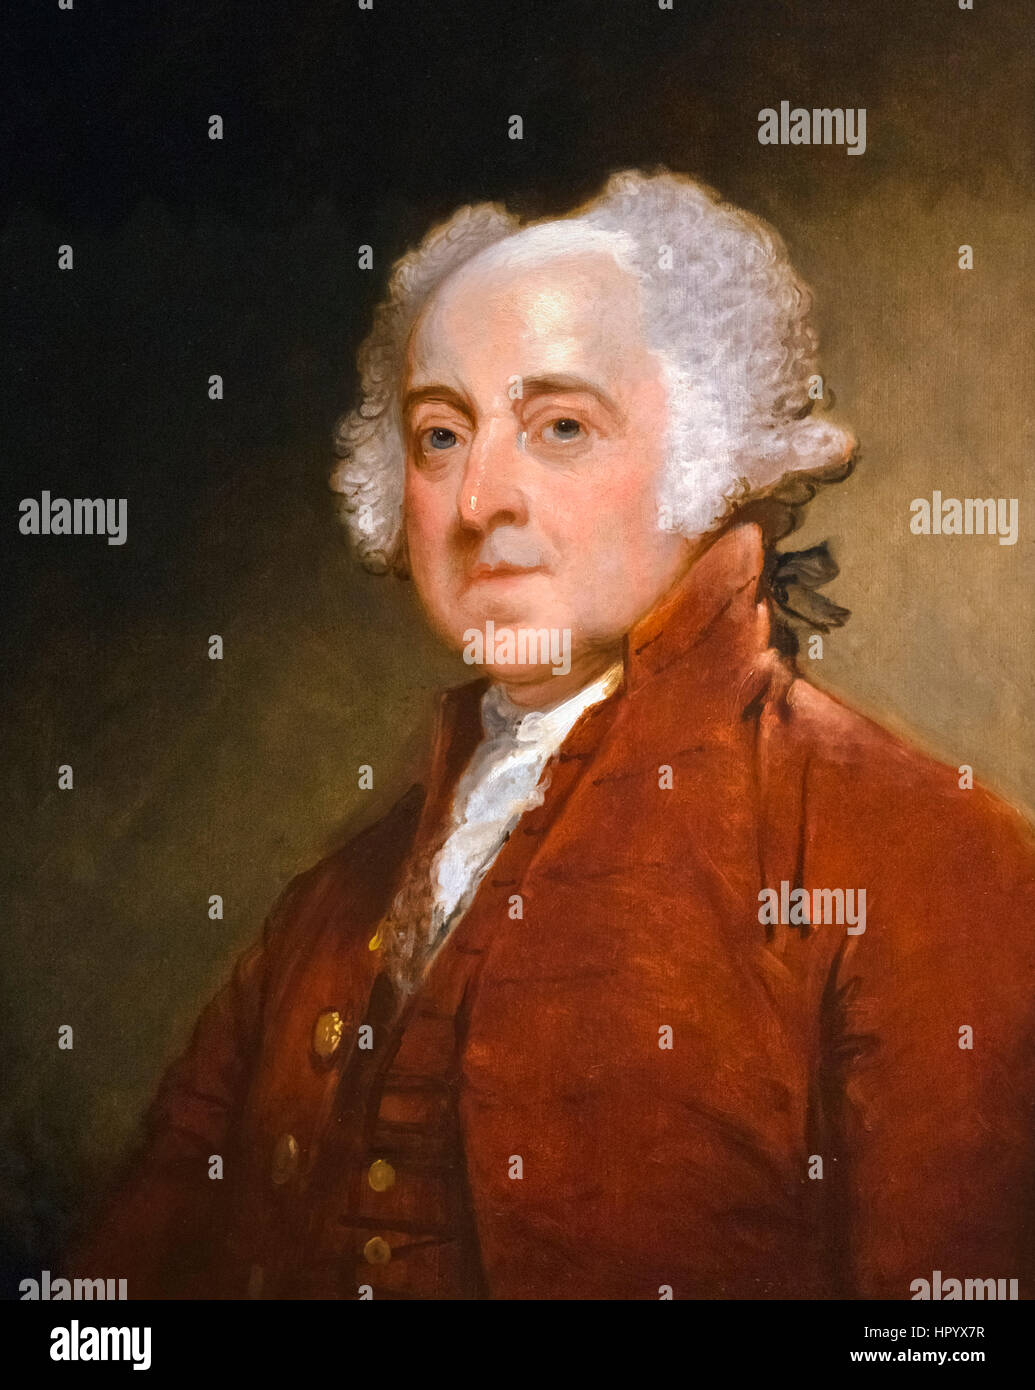 John Adams. Retrato del segundo presidente de Estados Unidos, John Adams (1735-1826) por Gilbert Stuart, oleo sobre madera, c.1821 Foto de stock